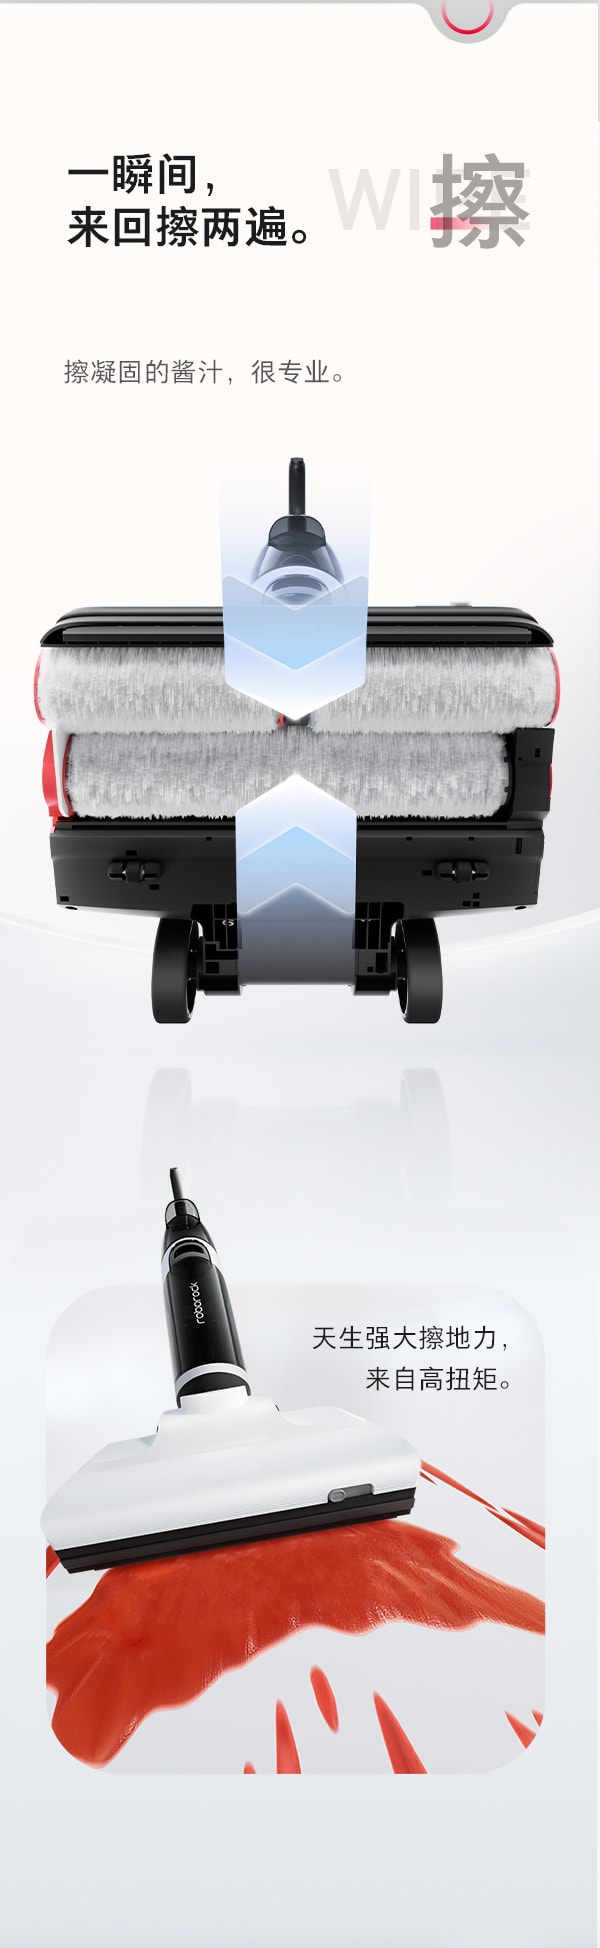 石頭(roborock)智慧雙刷洗地機Dyad Pro家用掃地吸塵洗拖一體拖地機 雙貼邊 熱風烘乾 深度自清潔